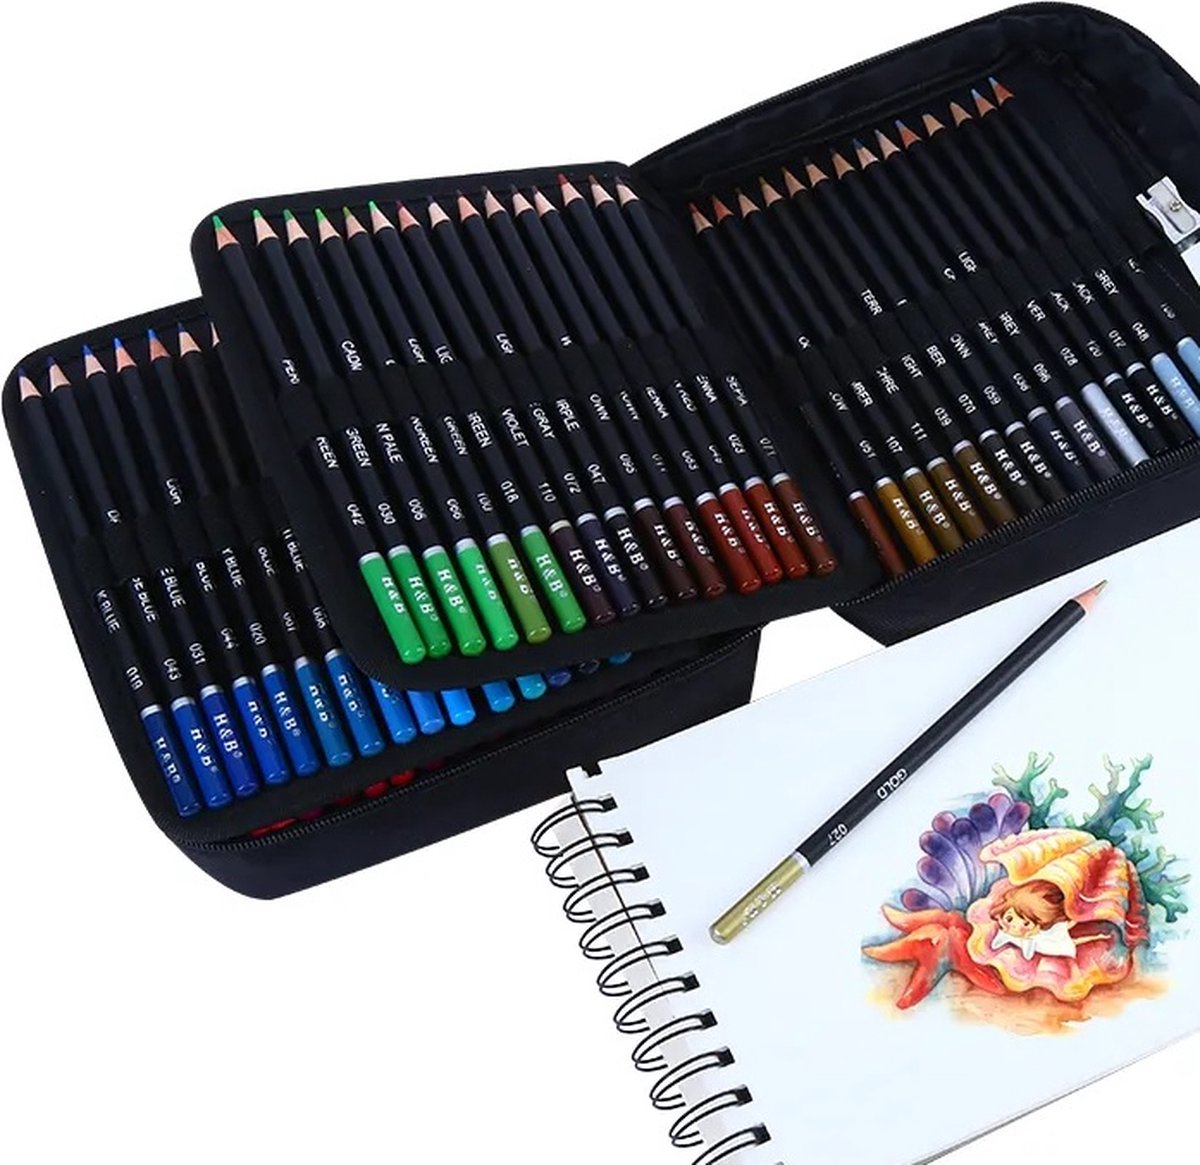 Kalour - Prachtige Kleurpotlodenset - 120-delige set verpakt in een mooie opbergetui - Rijke & Levendige Kleuren - Fijne Punt - Zachte Textuur - Perfecte Kleurafgifte - Cadeau Voor Tekenliefhebbers!